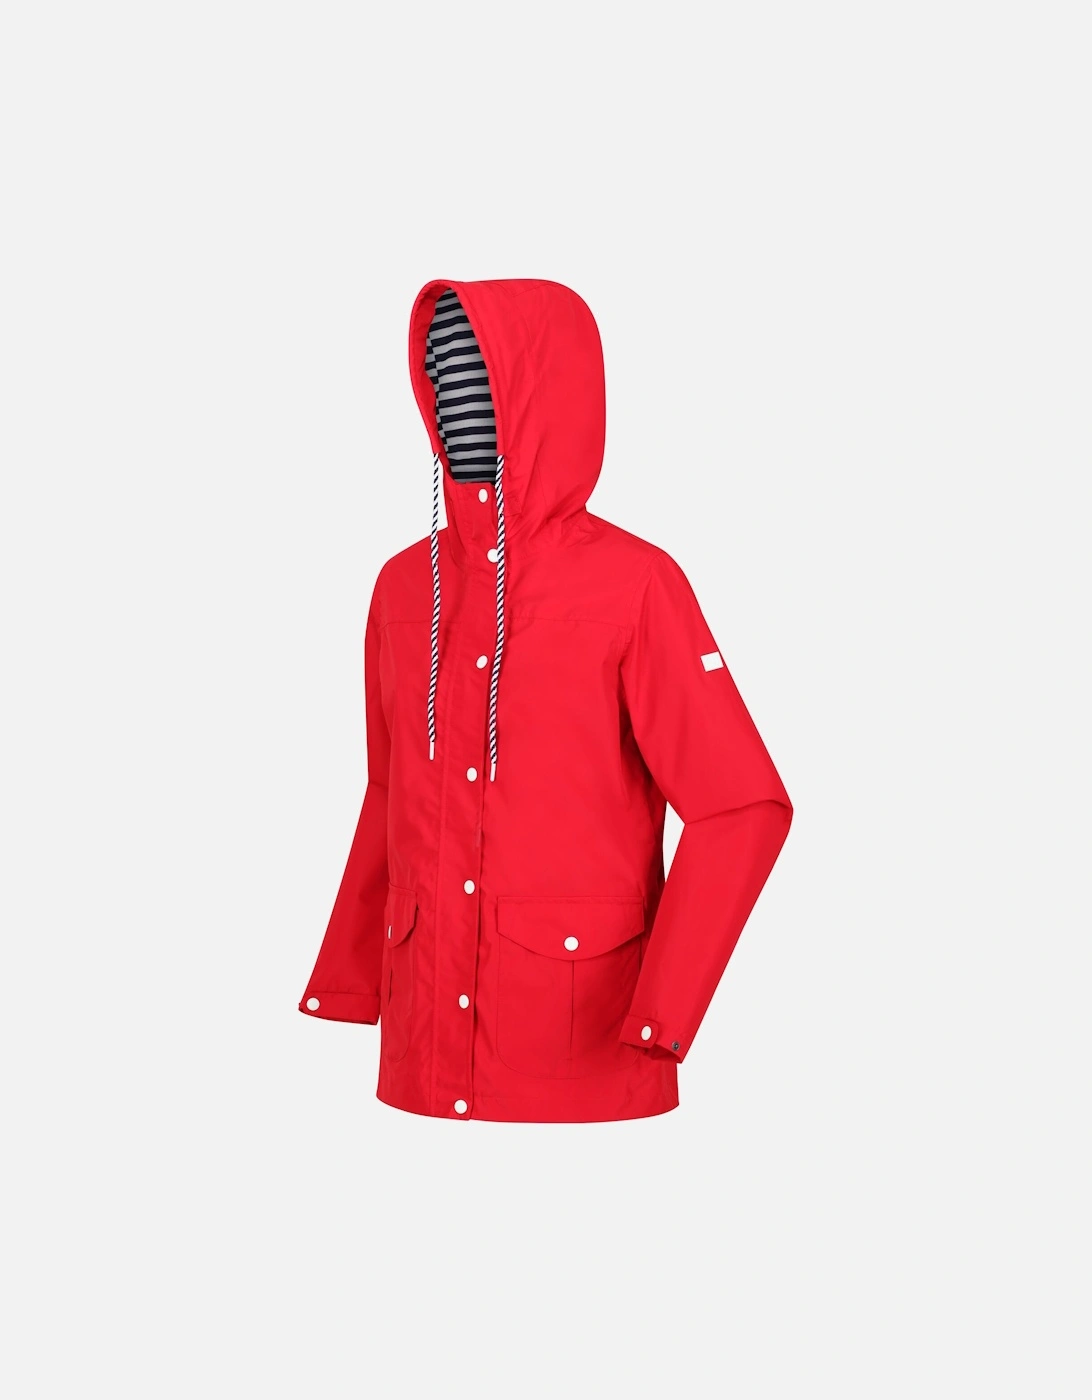 Womens/Ladies Bayarma Lightweight Waterproof Jacket